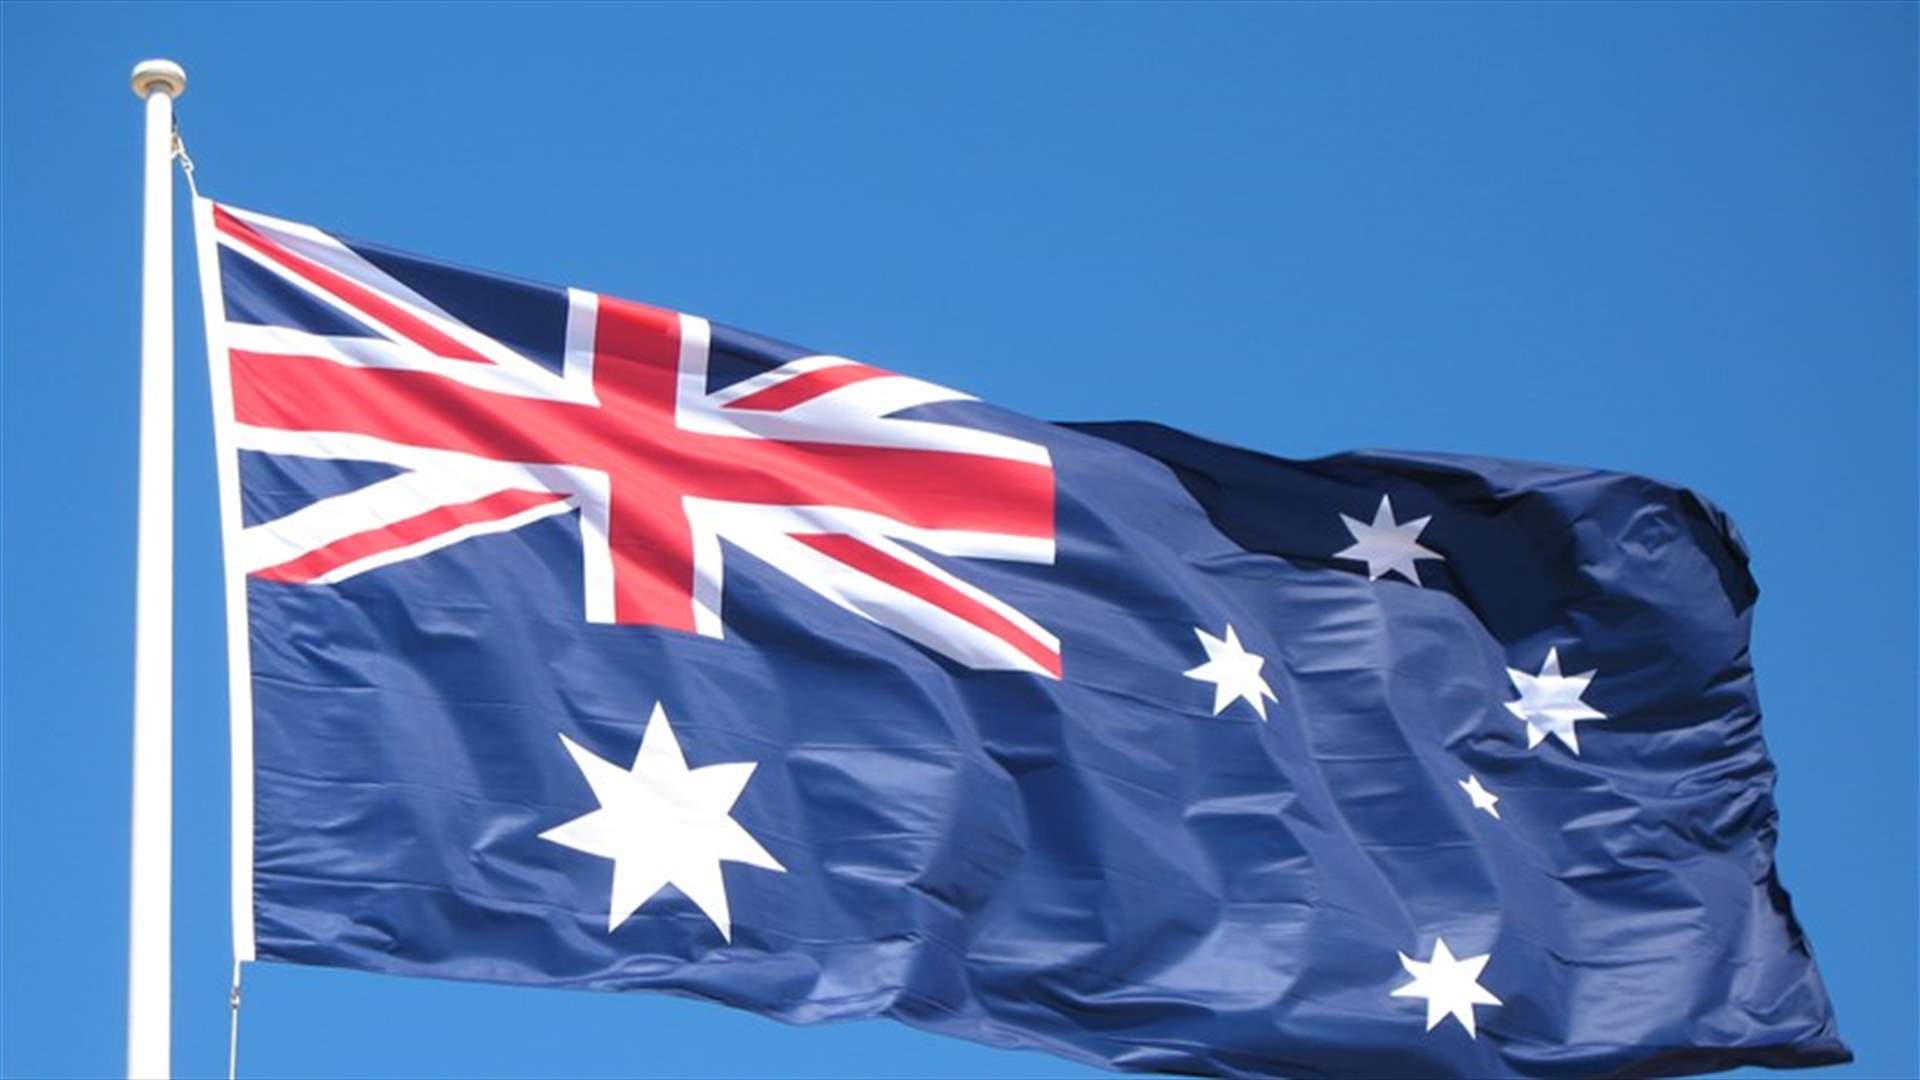 استراليا تعلن انضمامها لقوة بحرية تقودها واشنطن لتأمين الملاحة في الخليج